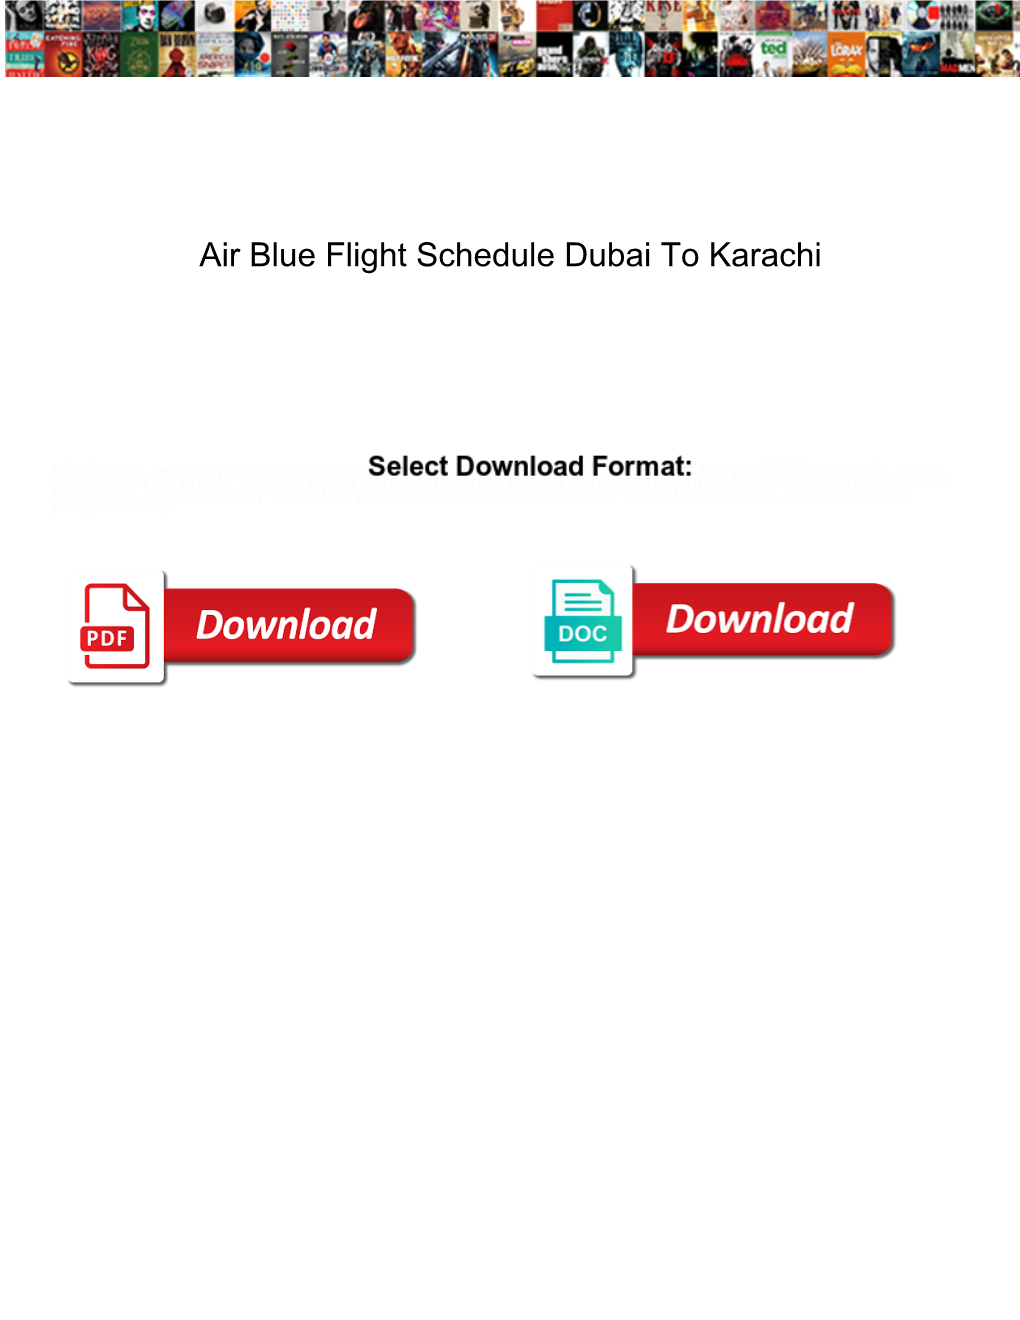 Air Blue Flight Schedule Dubai to Karachi Fiscal